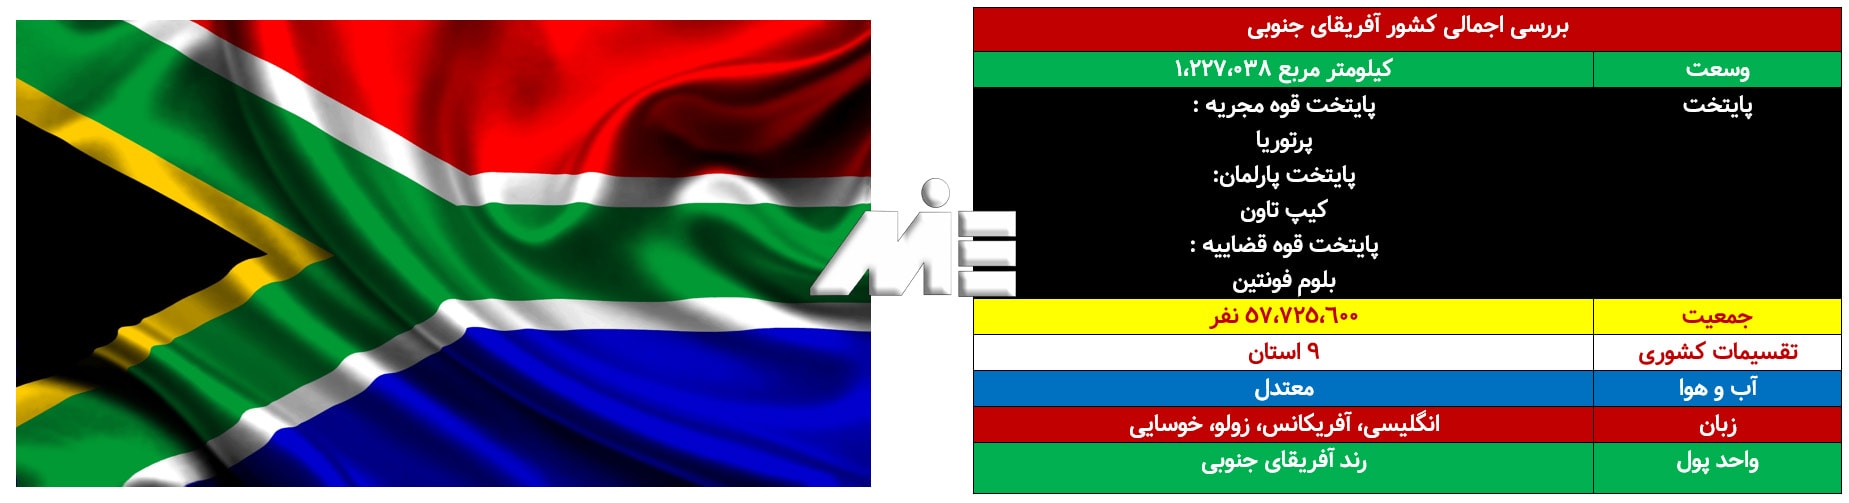 اطلاعات عمومی در مورد کشور آفریقای جنوبی ـ برررسی اجمالی آفریقای جنوبی